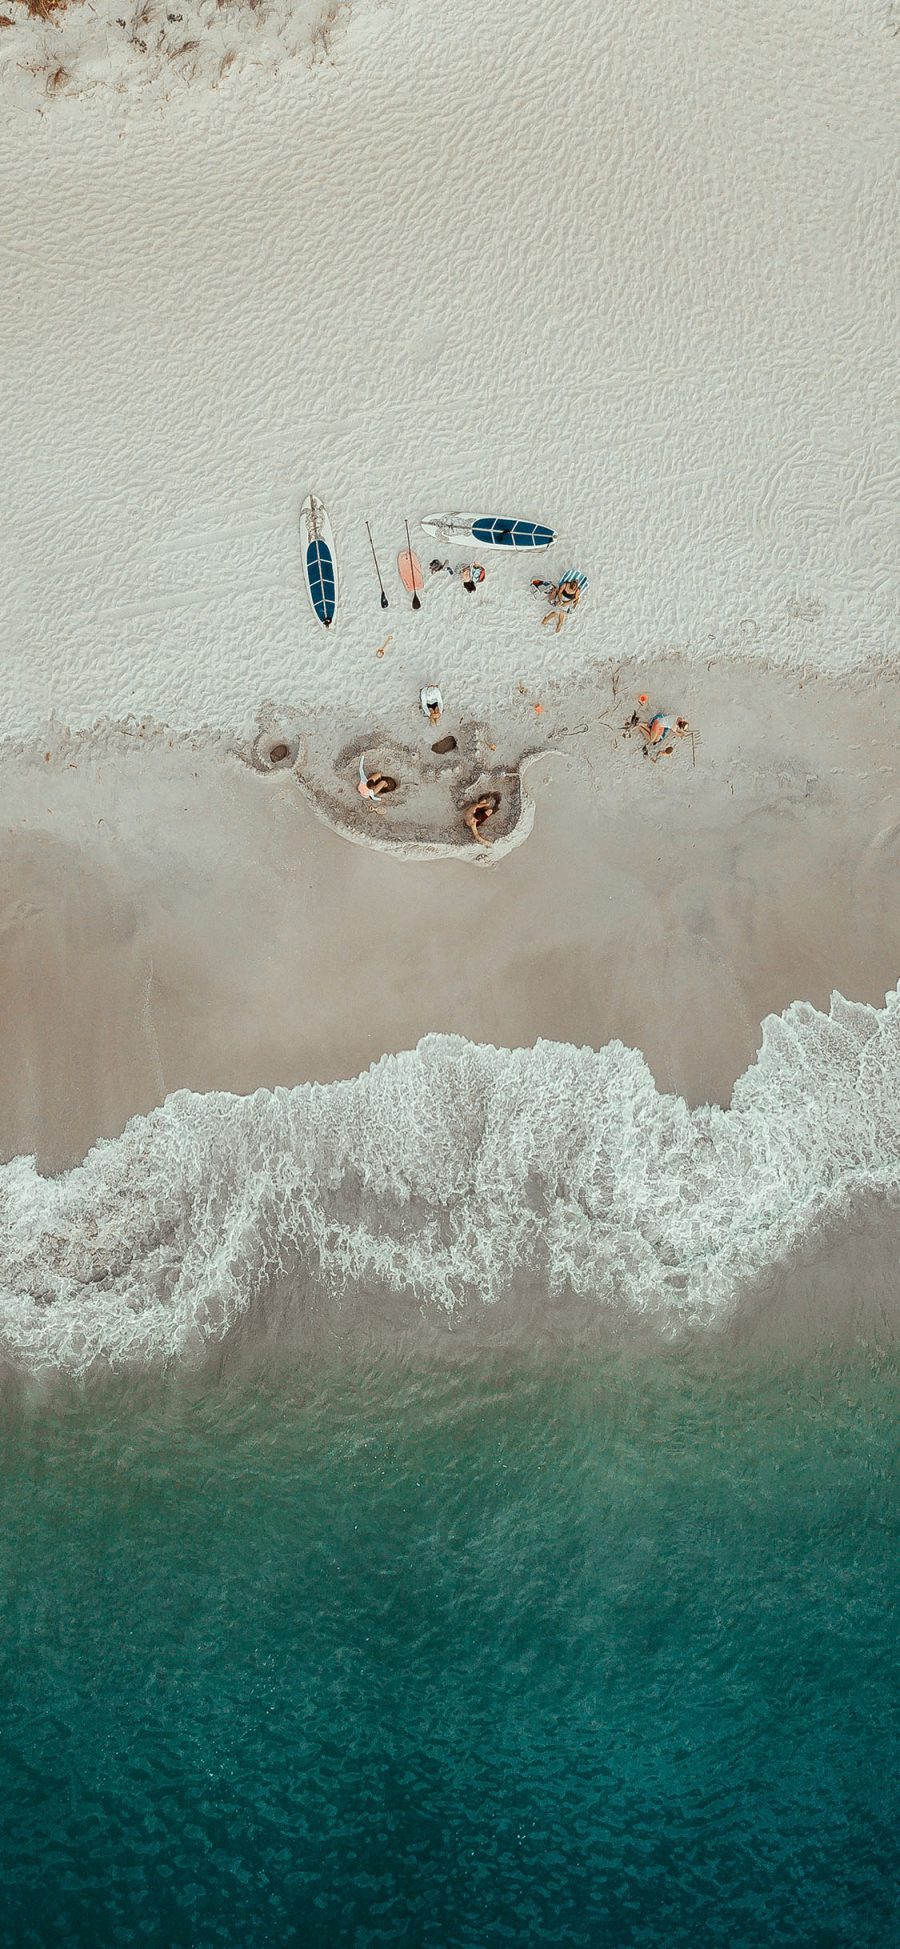 [2436×1125]大海 浪花 海滩 冲浪板 苹果手机壁纸图片